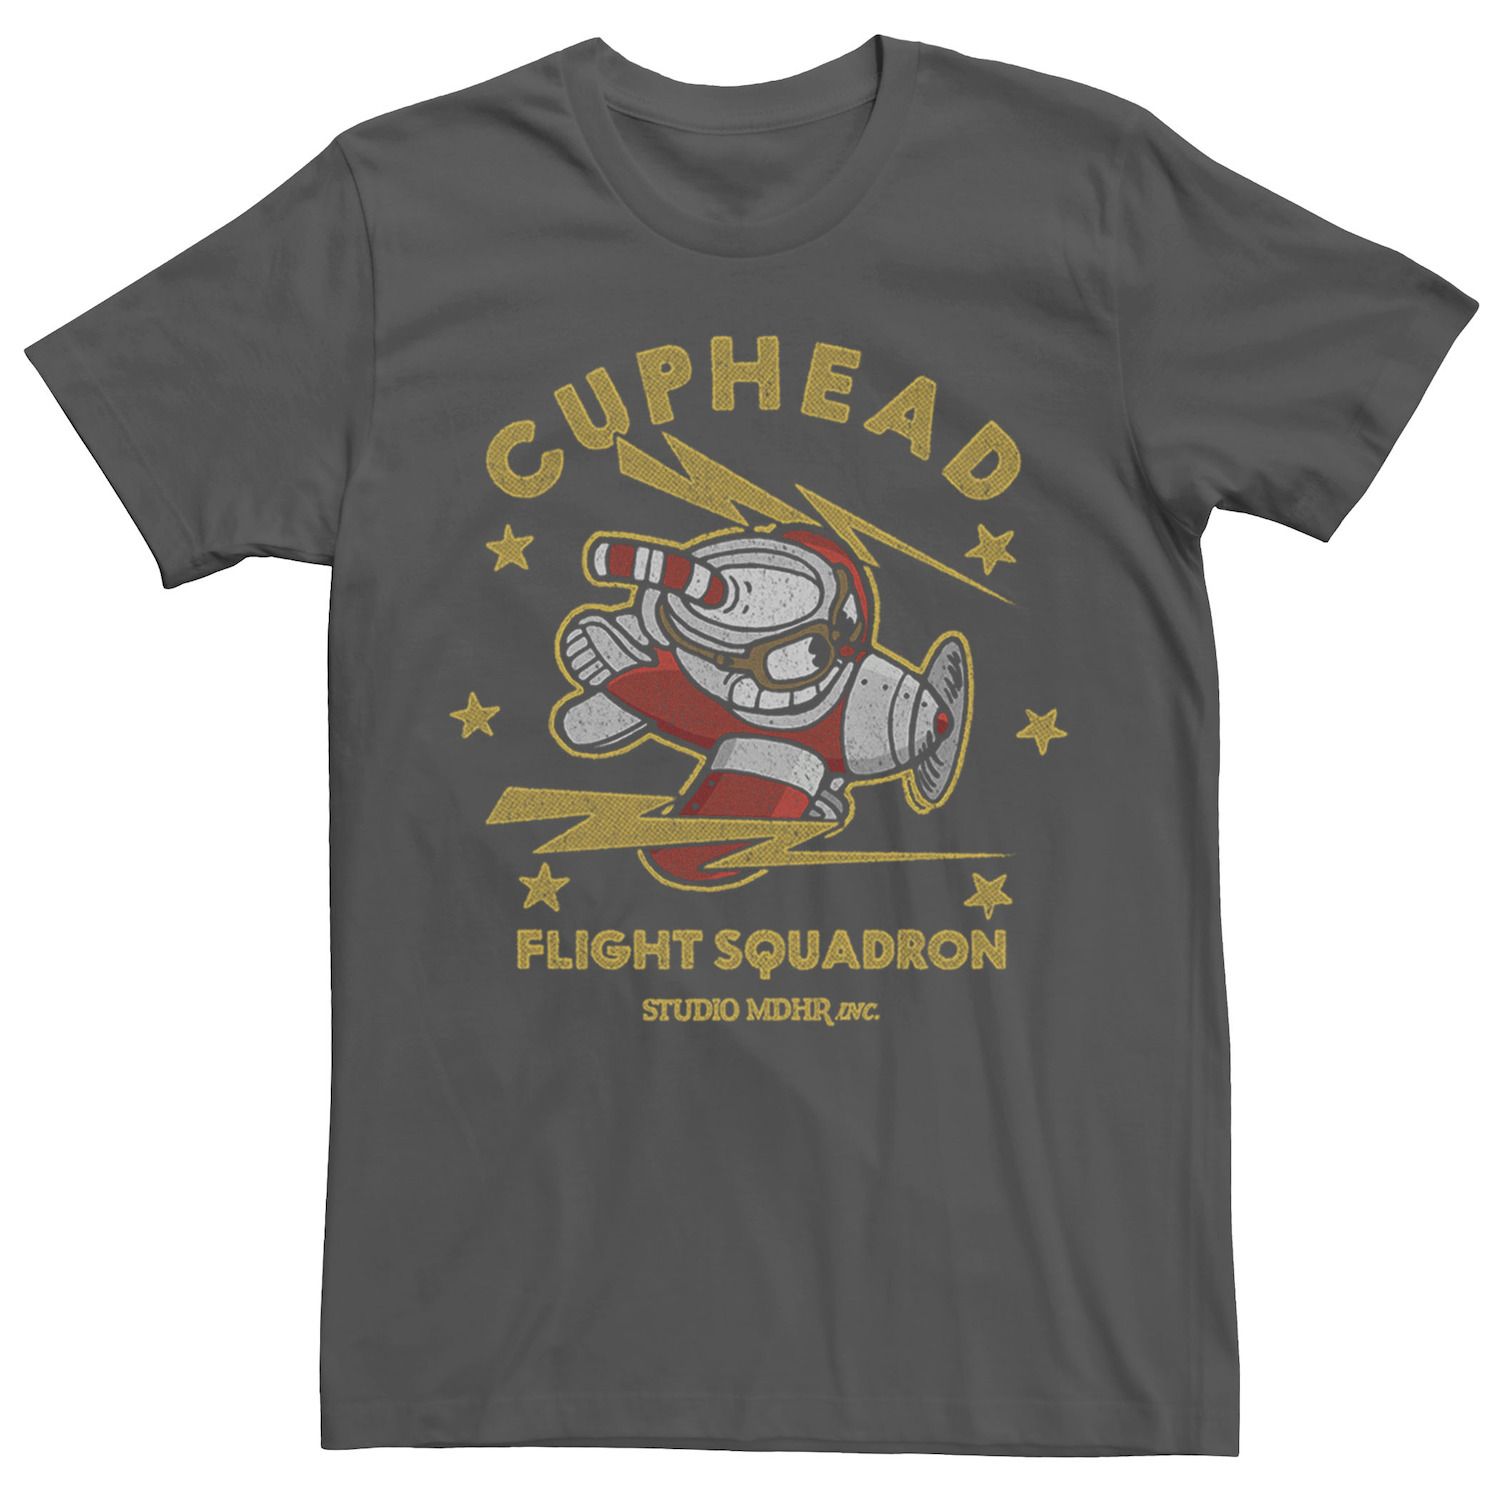 Мужская футболка Cuphead Flight Squadron с графическим рисунком Licensed Character